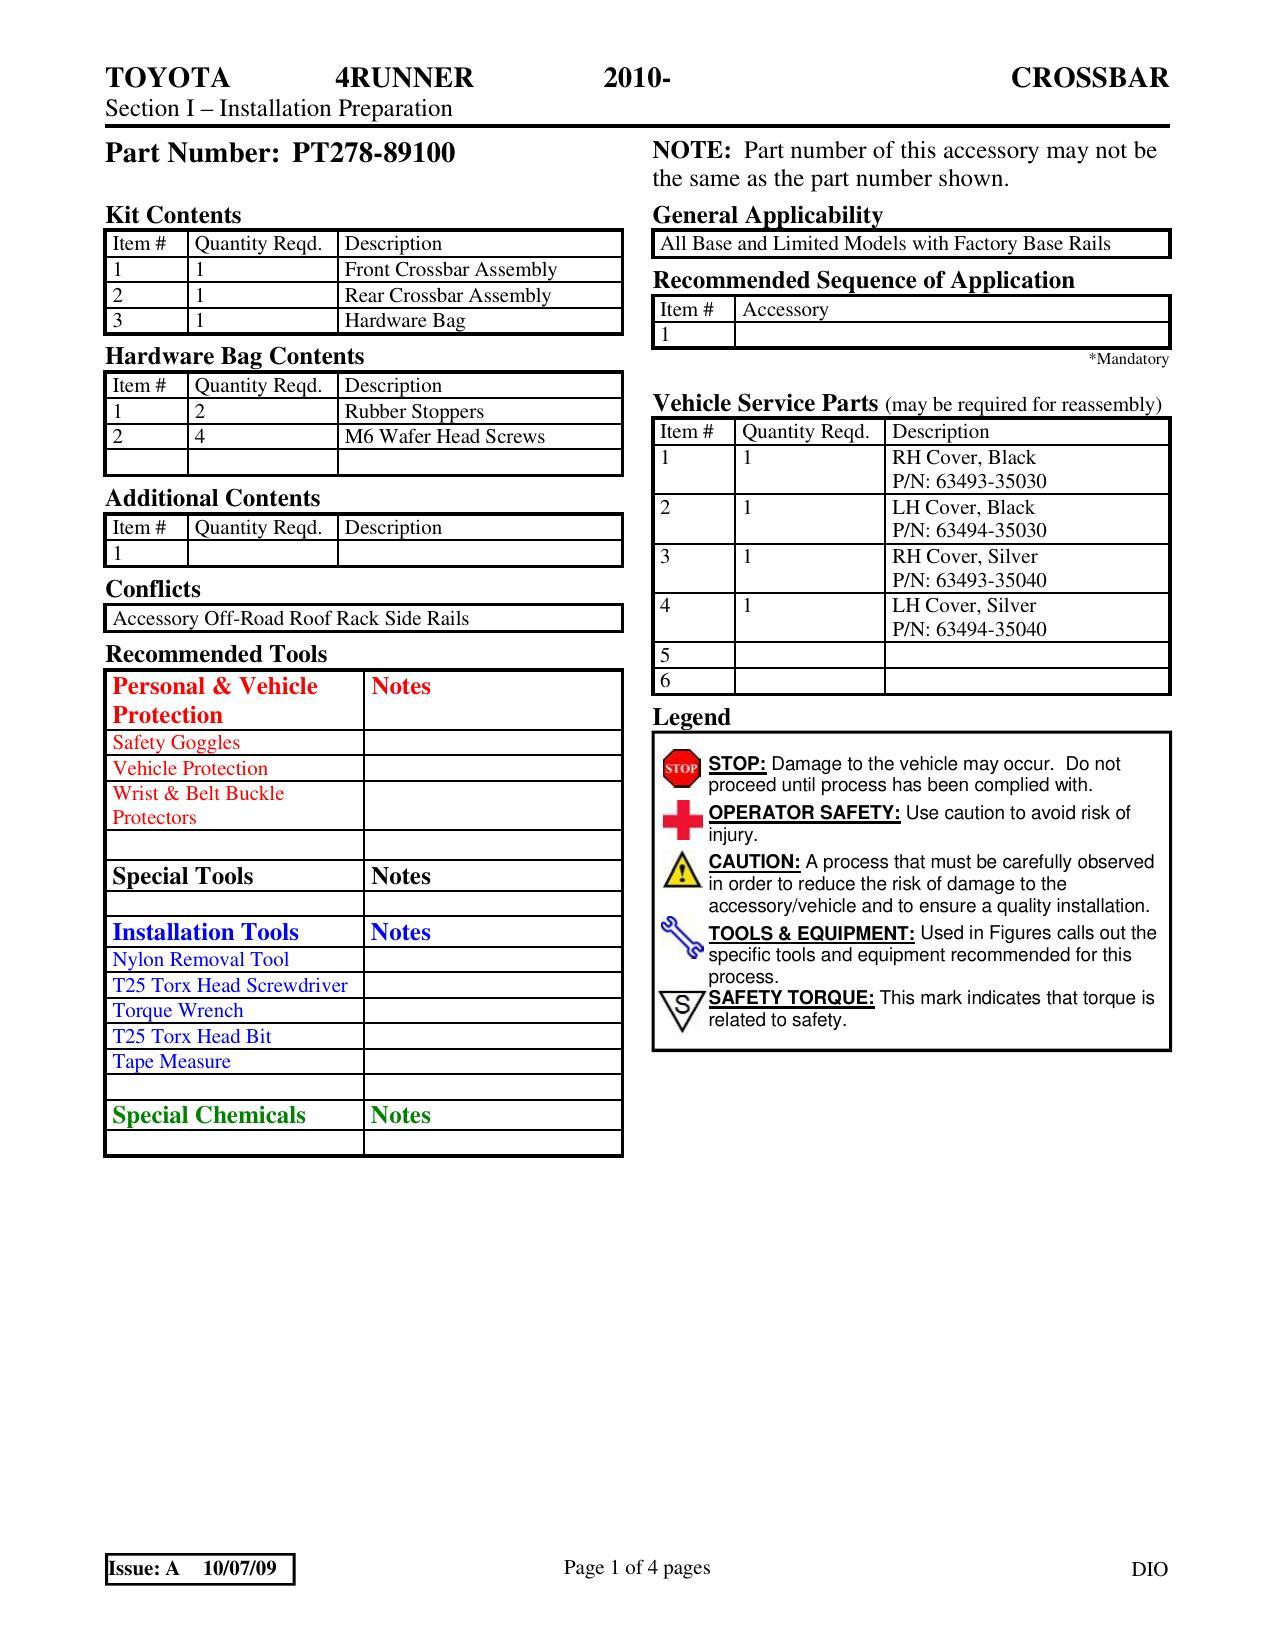 toyota-4runner-2010-crossbar-installation-manual.pdf